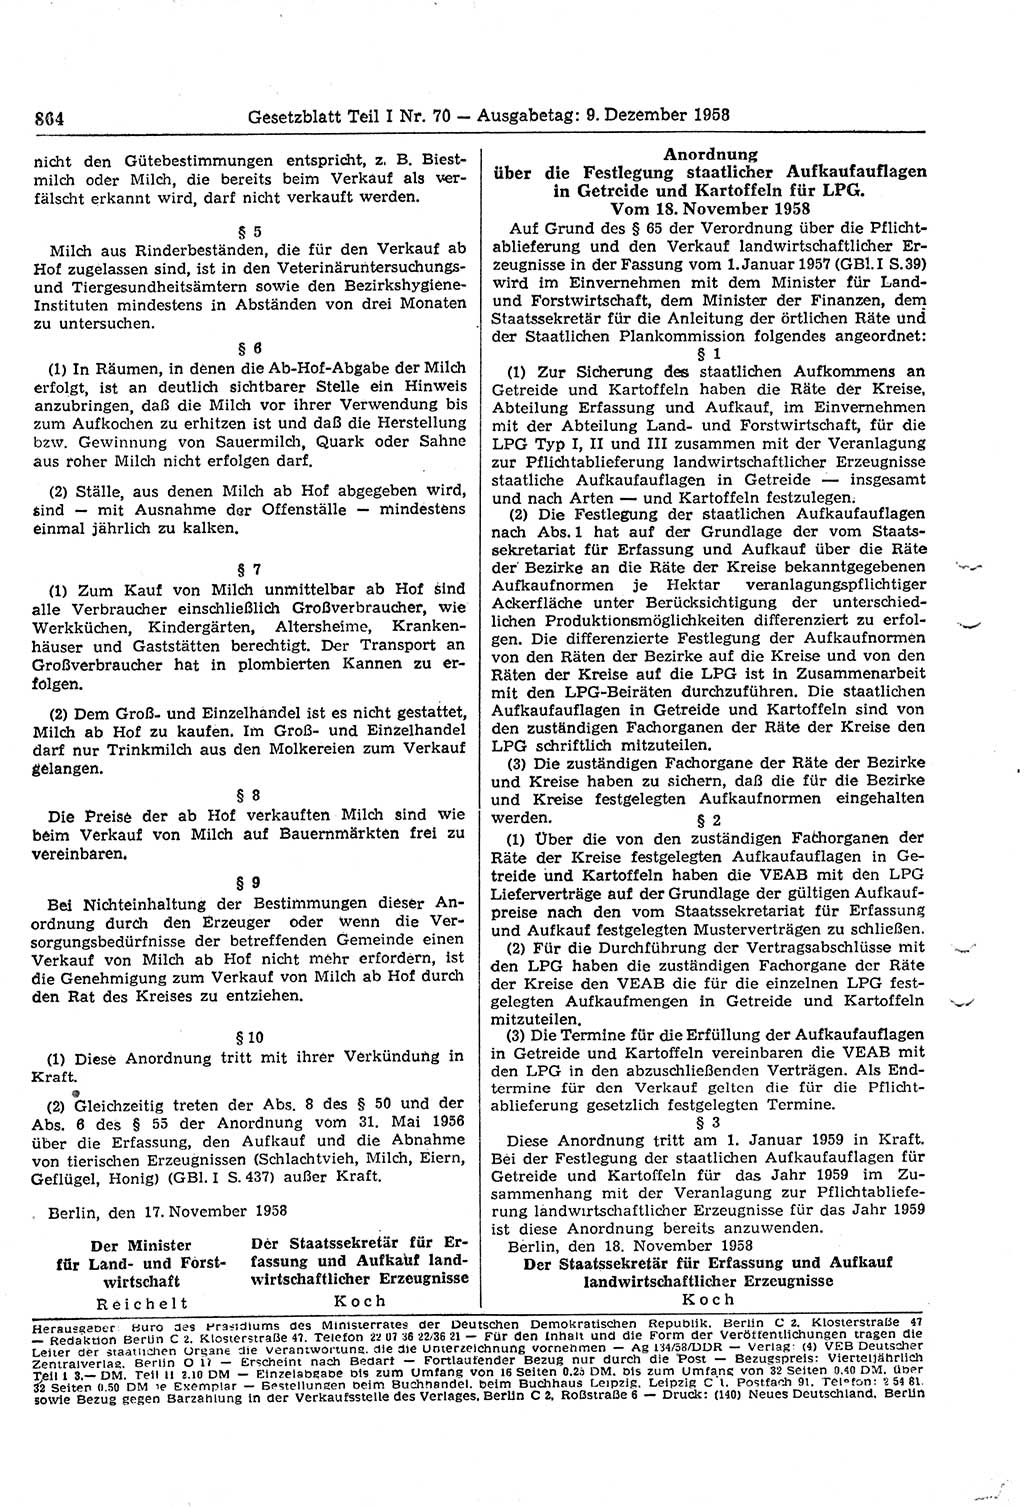 Gesetzblatt (GBl.) der Deutschen Demokratischen Republik (DDR) Teil Ⅰ 1958, Seite 864 (GBl. DDR Ⅰ 1958, S. 864)